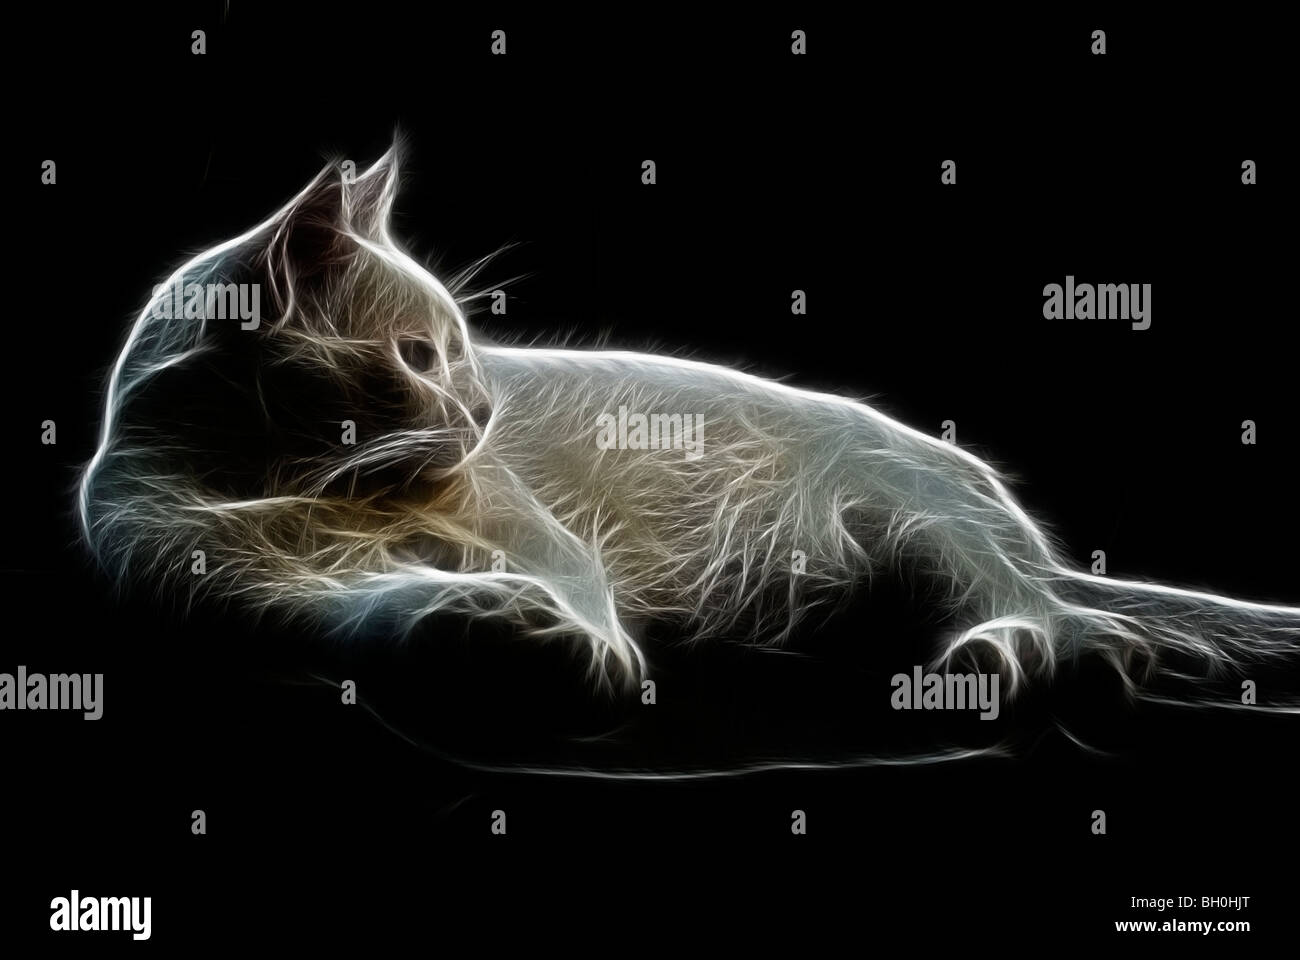 Ein Fraktal-wie Bild des Profils eine streunende Katze Stockfoto